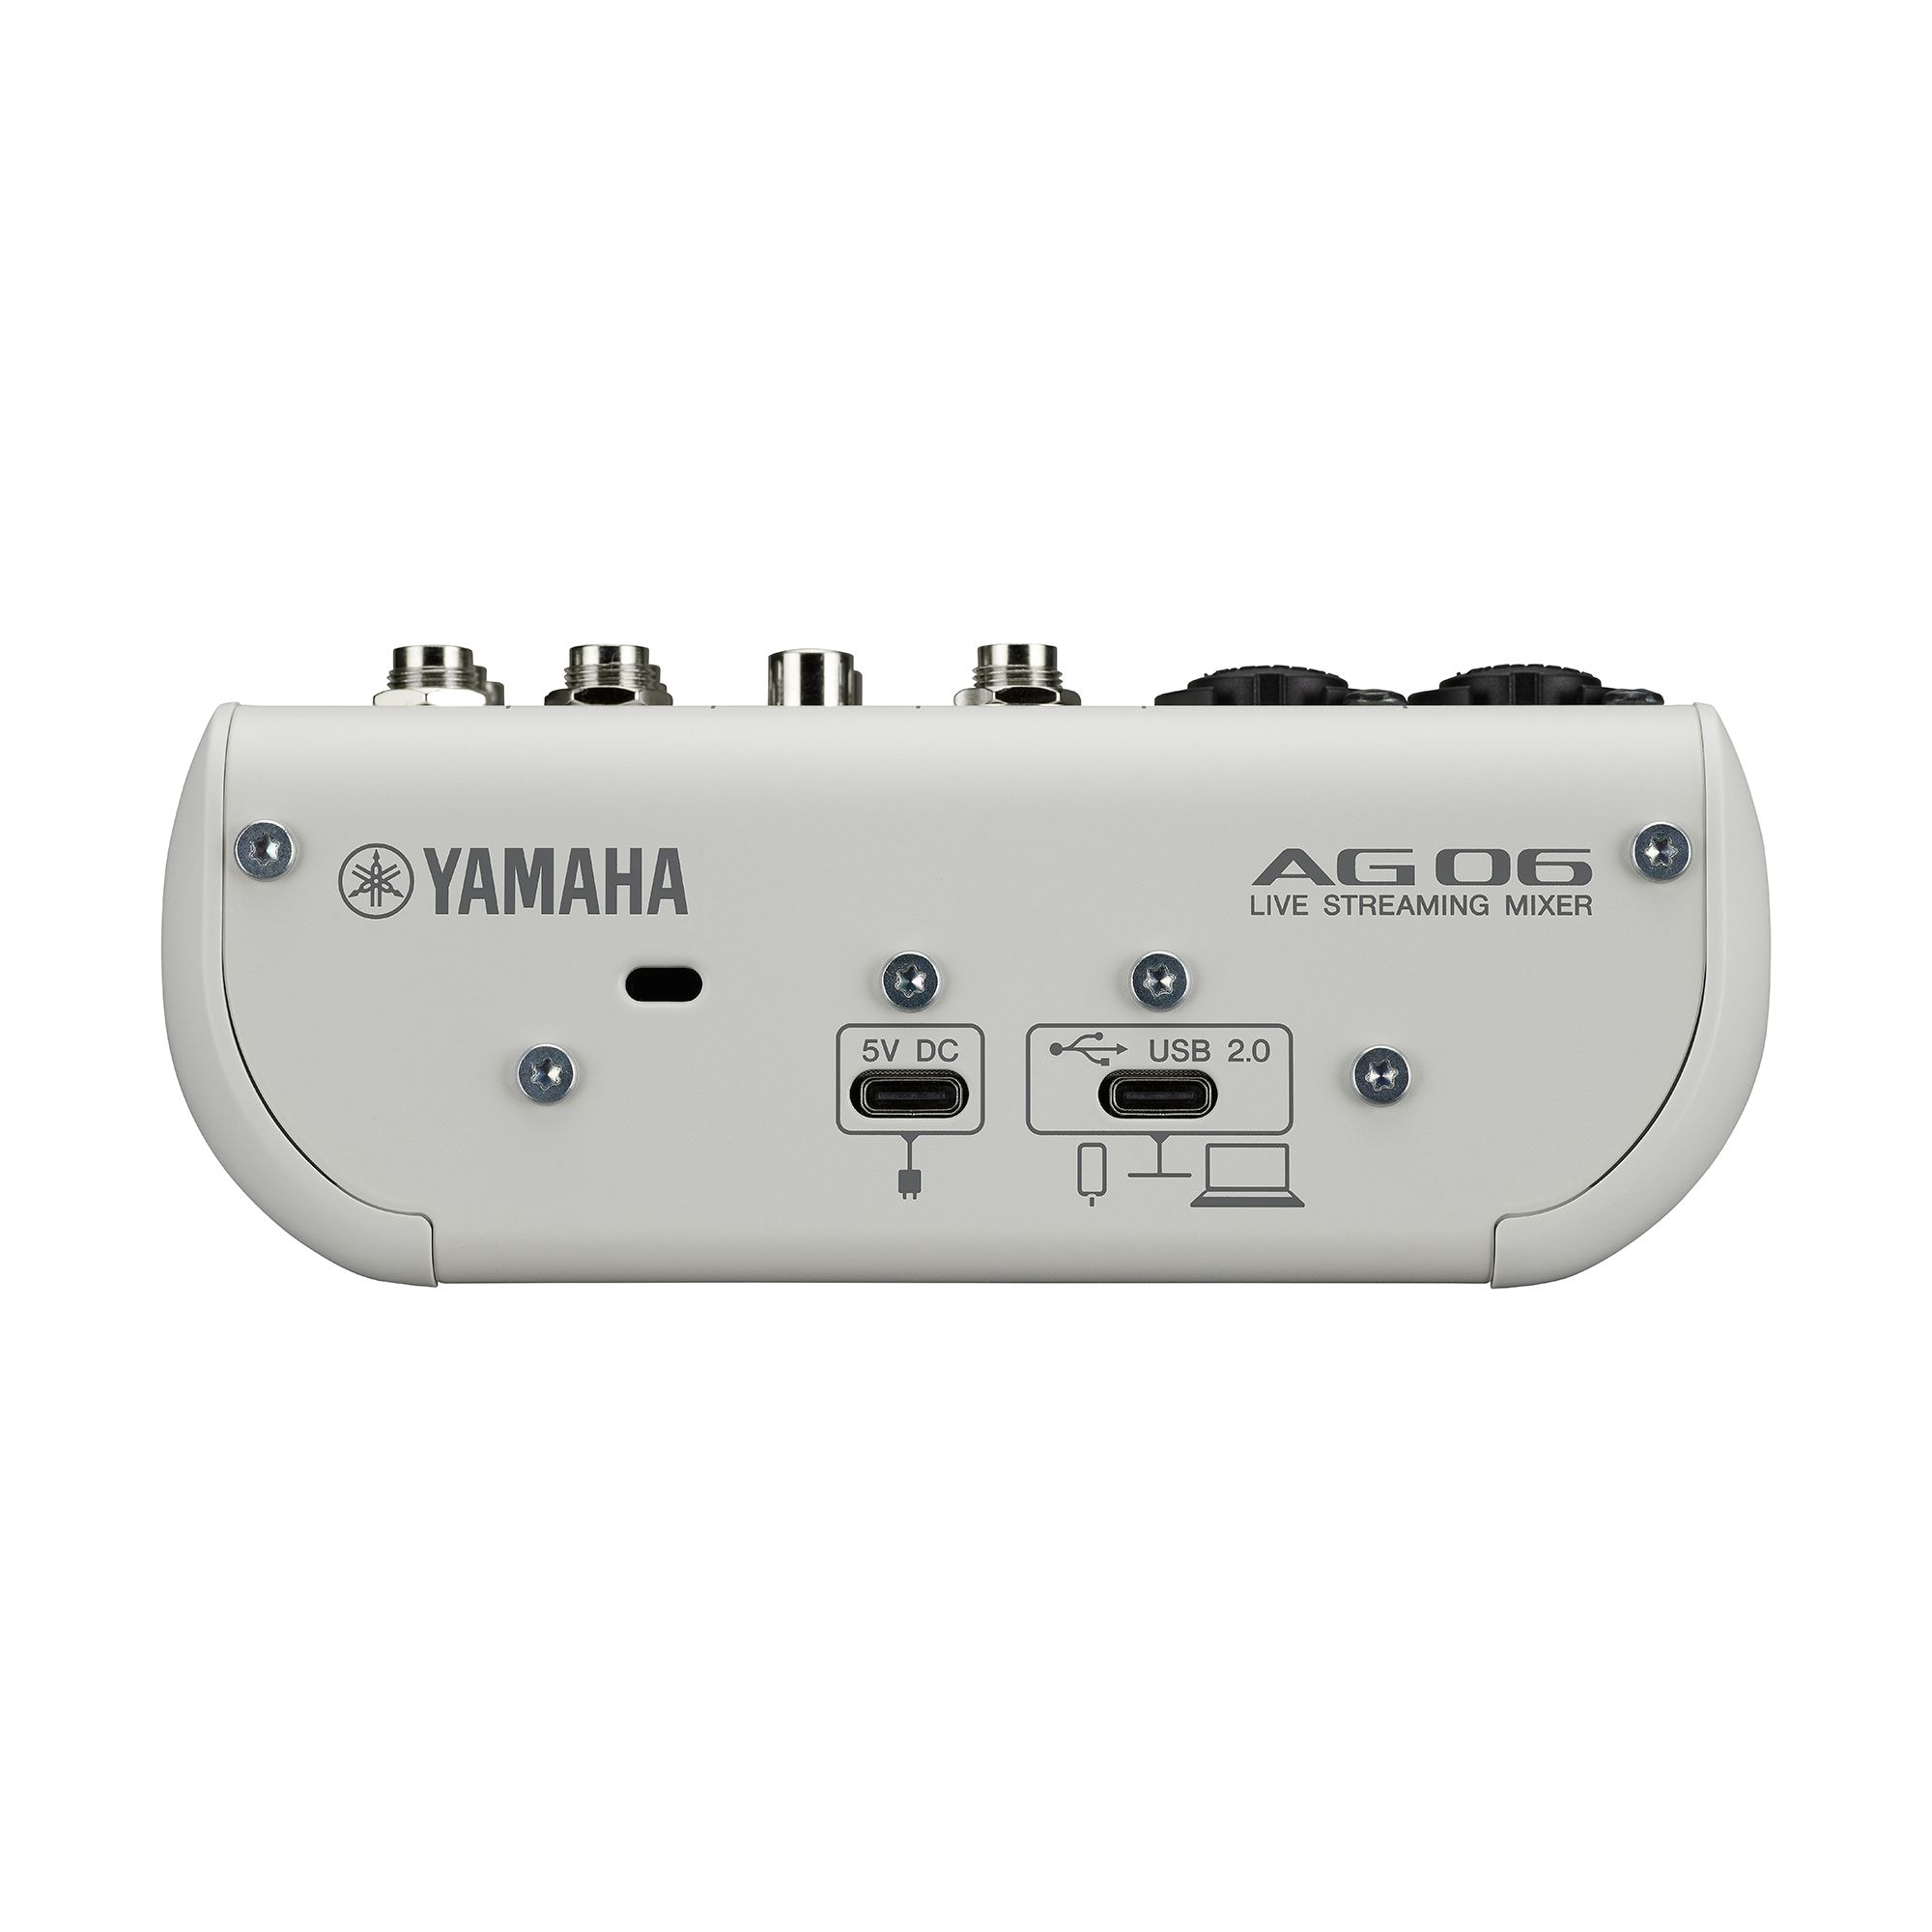 お気に入りの ヤマハ W AG06MK2 ホワイト 6チャンネル YAMAHA 配信機器 